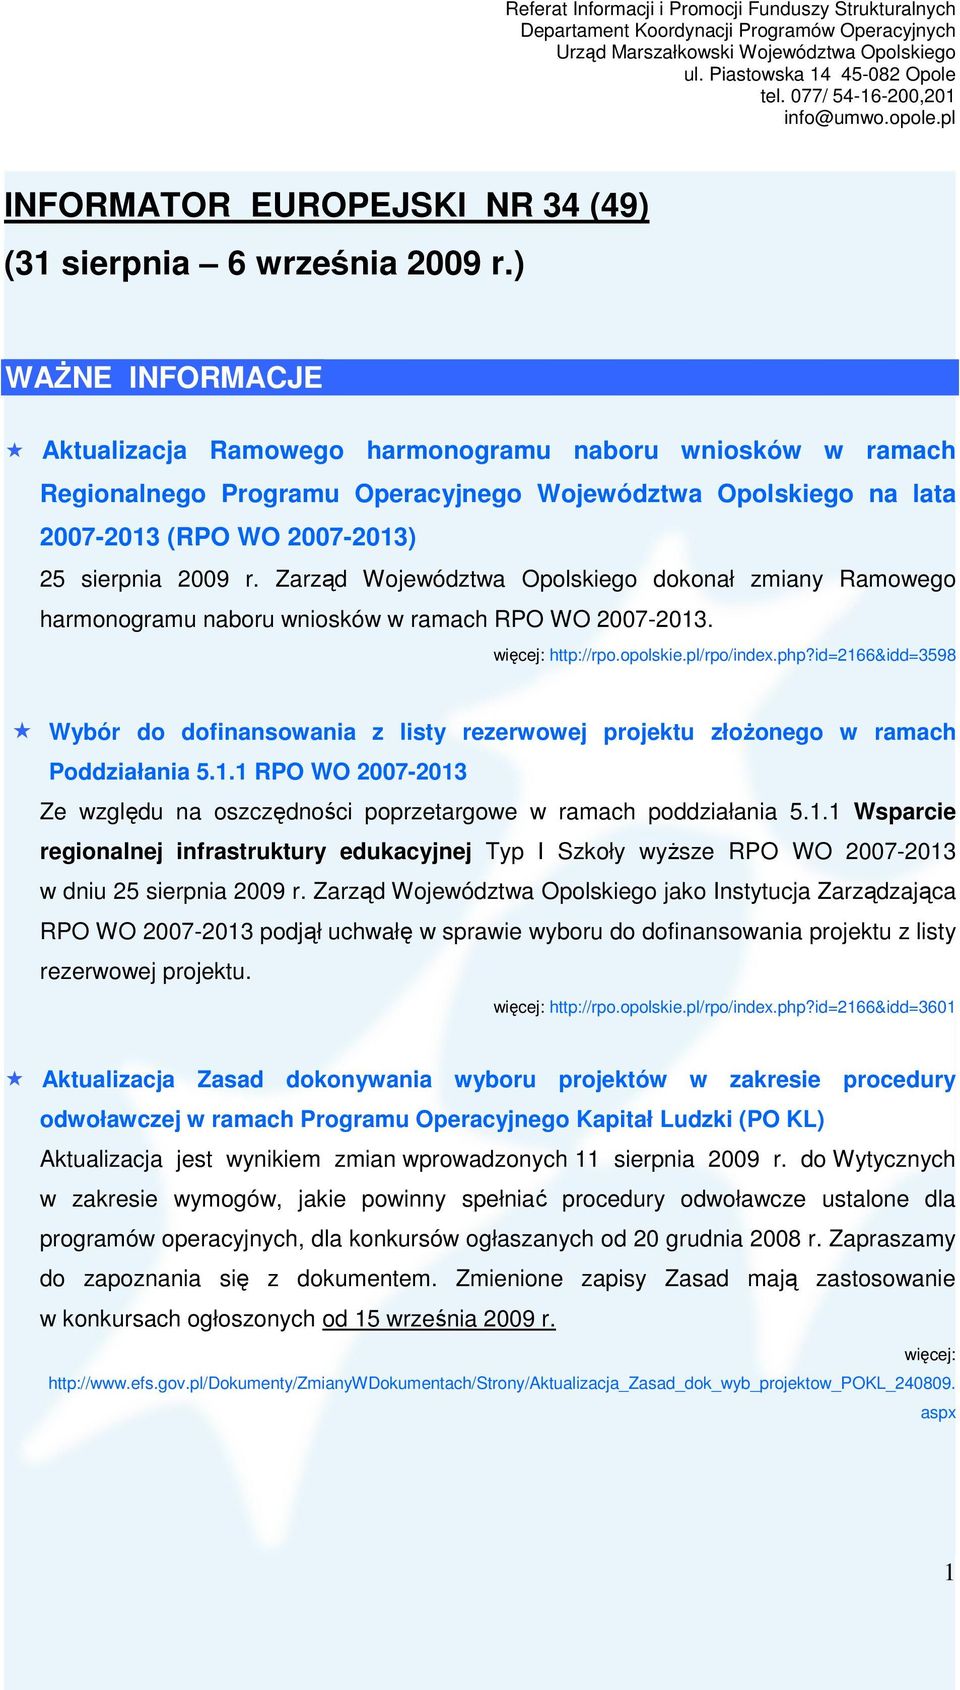 Zarząd Województwa Opolskiego dokonał zmiany Ramowego harmonogramu naboru wniosków w ramach RPO WO 2007-2013. http://rpo.opolskie.pl/rpo/index.php?